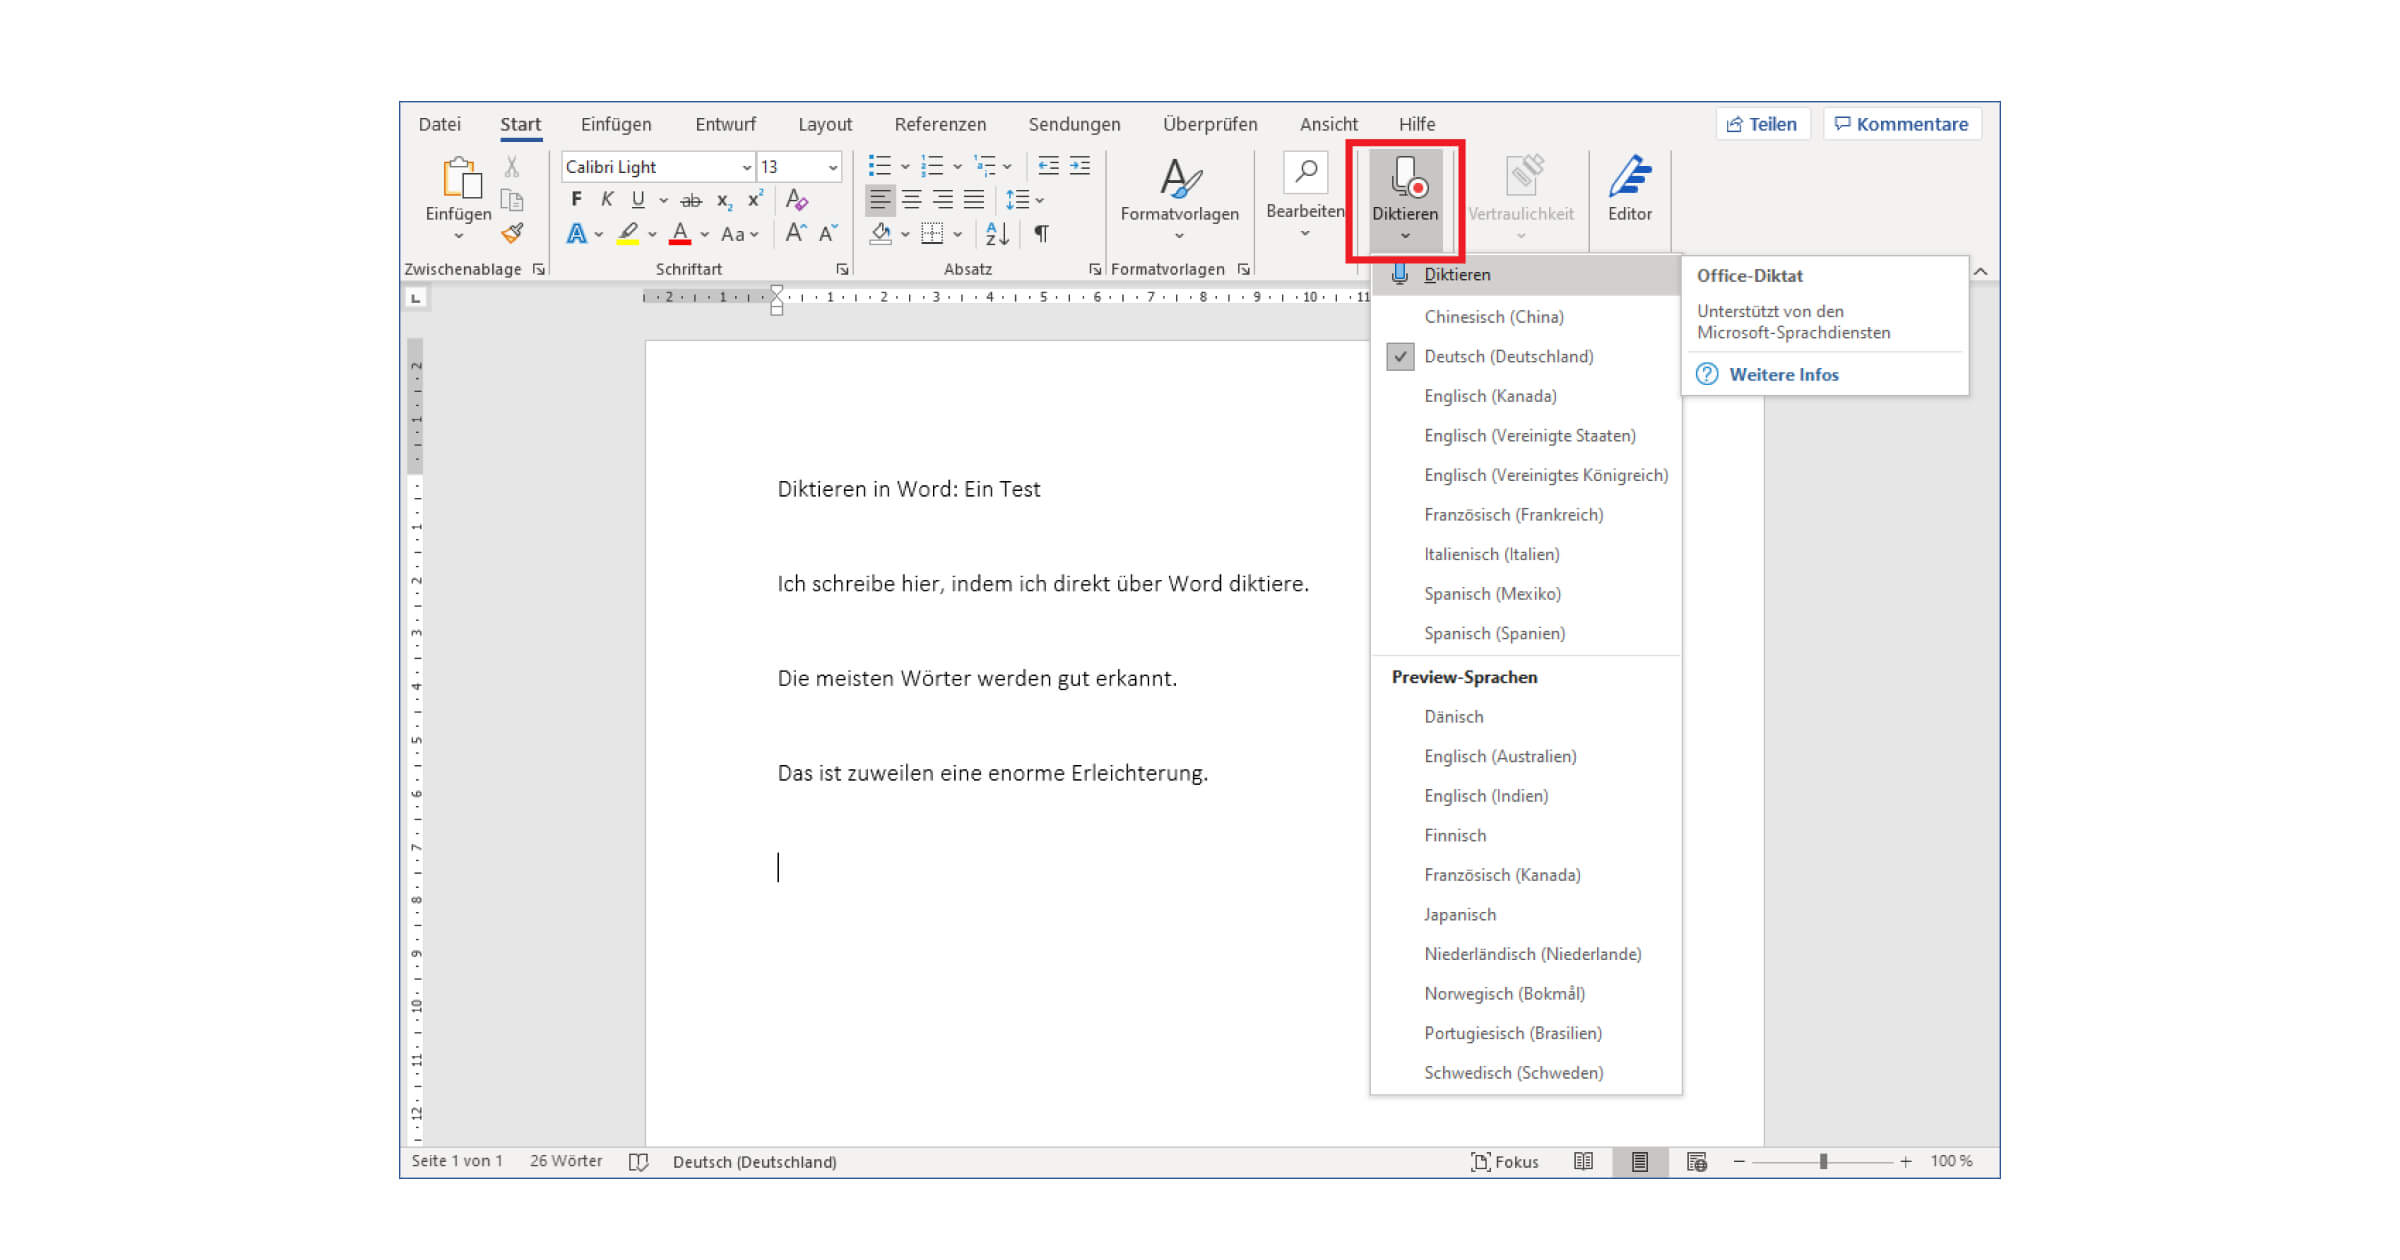 Dictado en Word: La función de entrada de voz en Office 365 